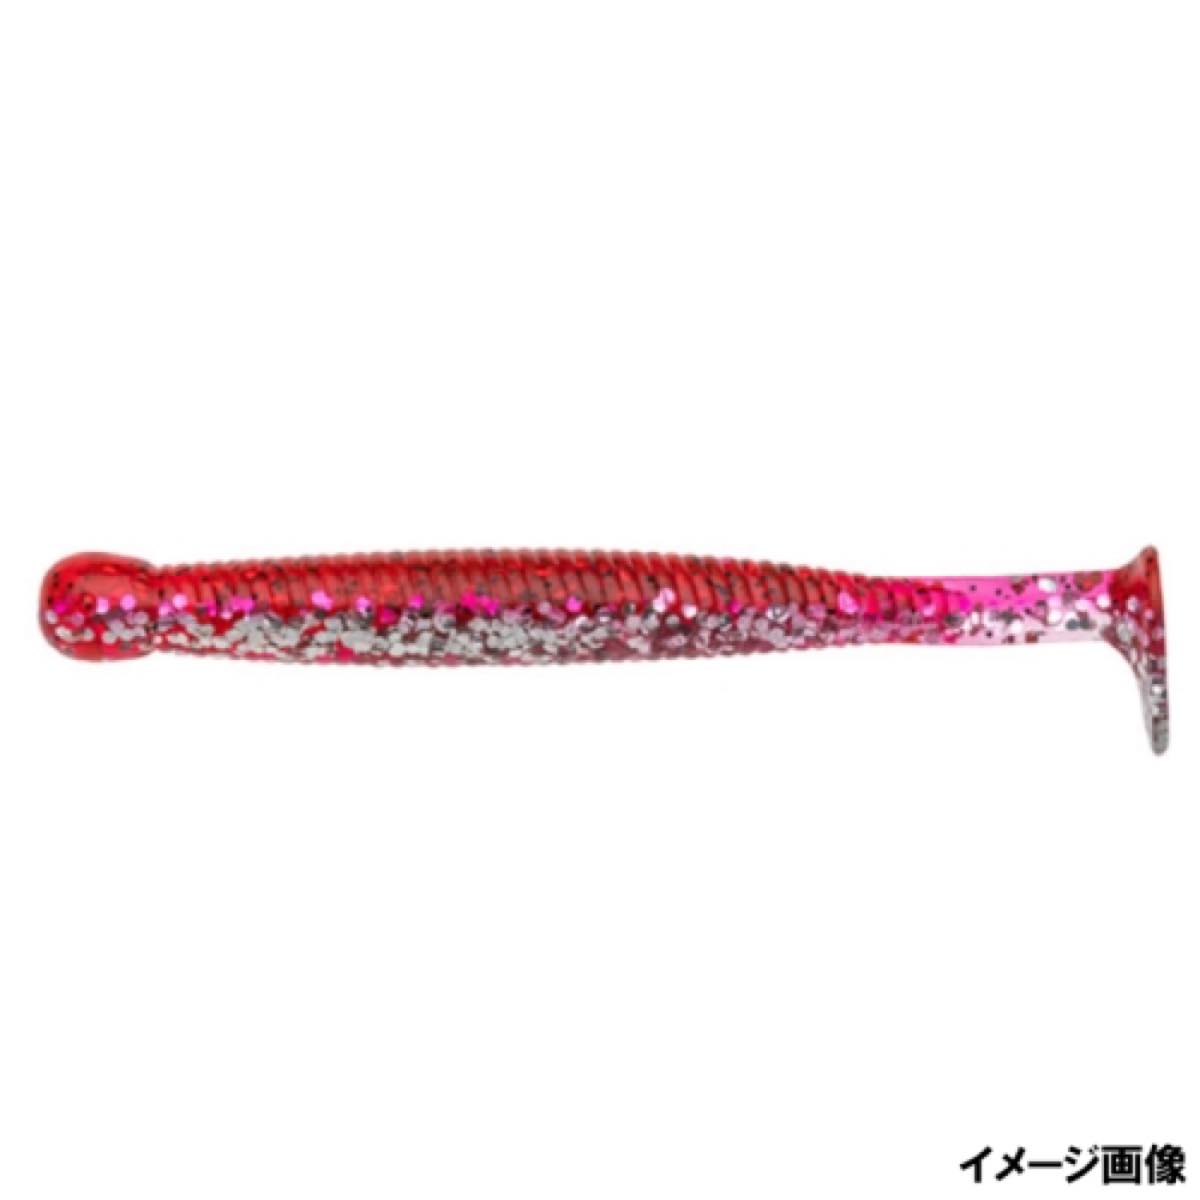 マルキュー(MARUKYU)グラスミノーL#111【ネコポス・メール便対象商品】